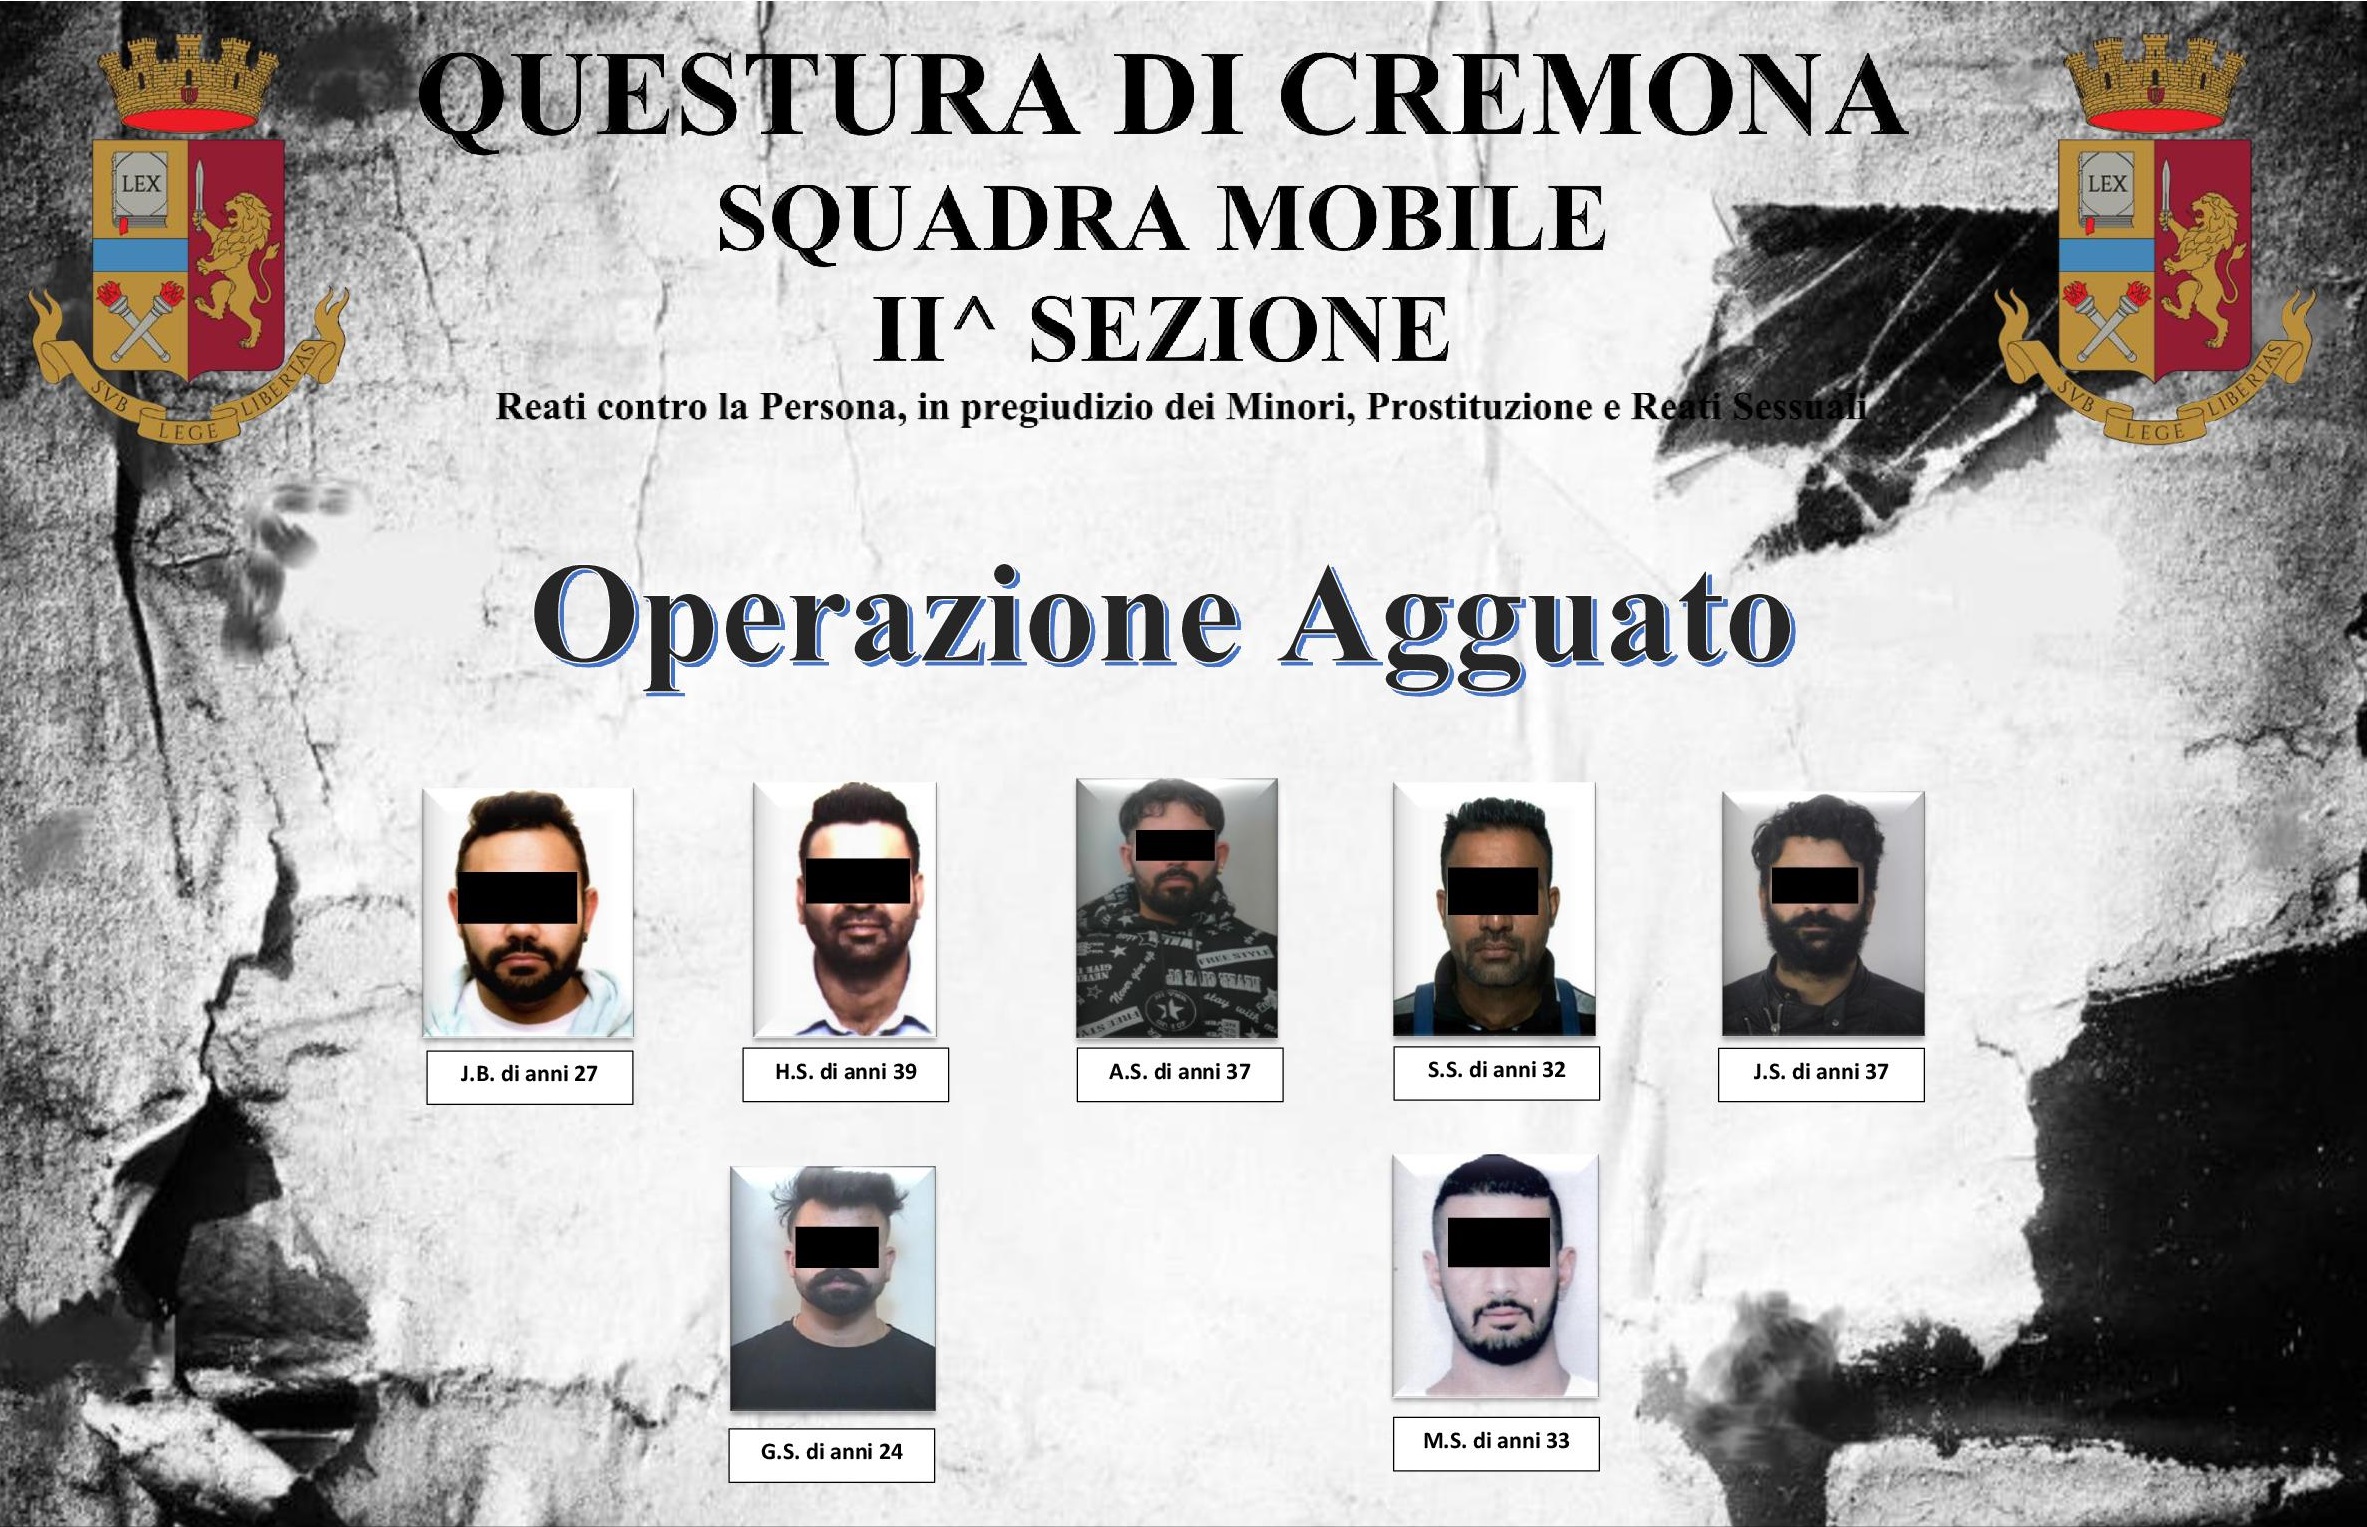 Questura di Cremona: "operazione agguato".